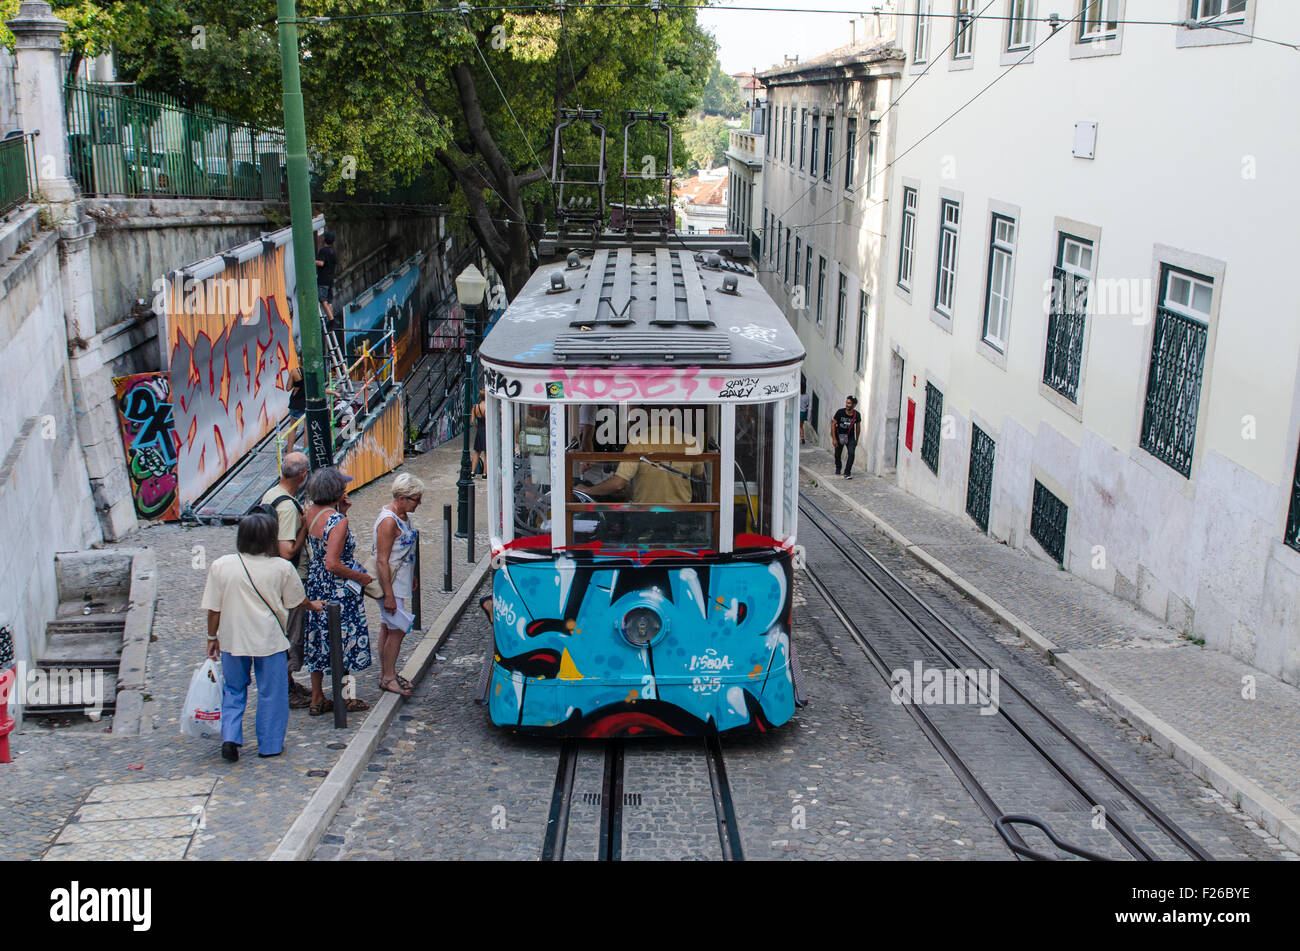 Elevador da Glória, eine Standseilbahn verbindet das Baixa-Viertel mit Barrio Alto in Lissabon, Portugal Stockfoto